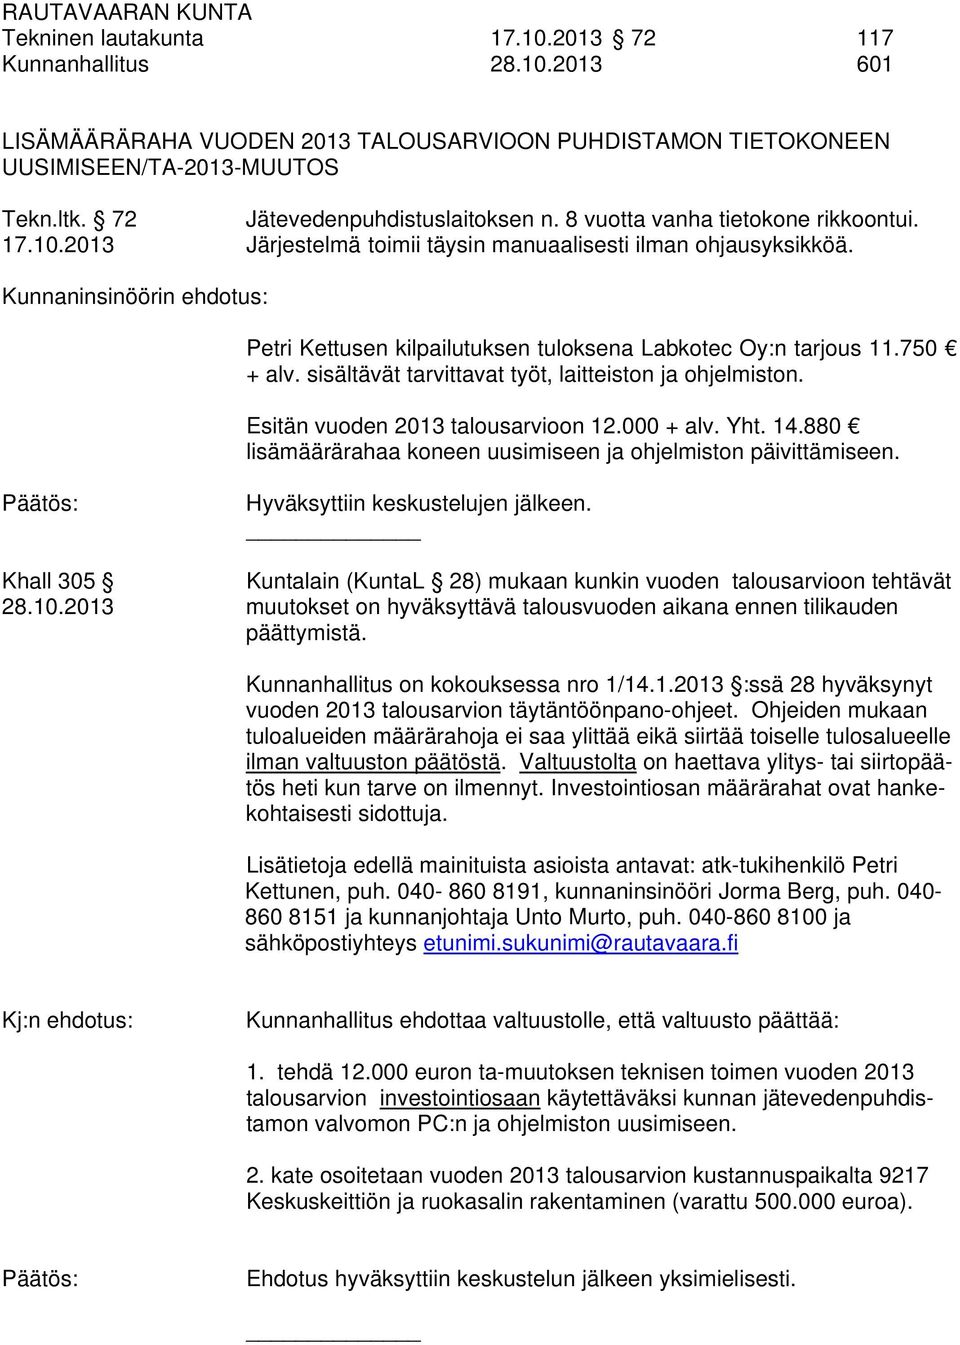 Kunnaninsinöörin ehdotus: Petri Kettusen kilpailutuksen tuloksena Labkotec Oy:n tarjous 11.750 + alv. sisältävät tarvittavat työt, laitteiston ja ohjelmiston. Esitän vuoden 2013 talousarvioon 12.